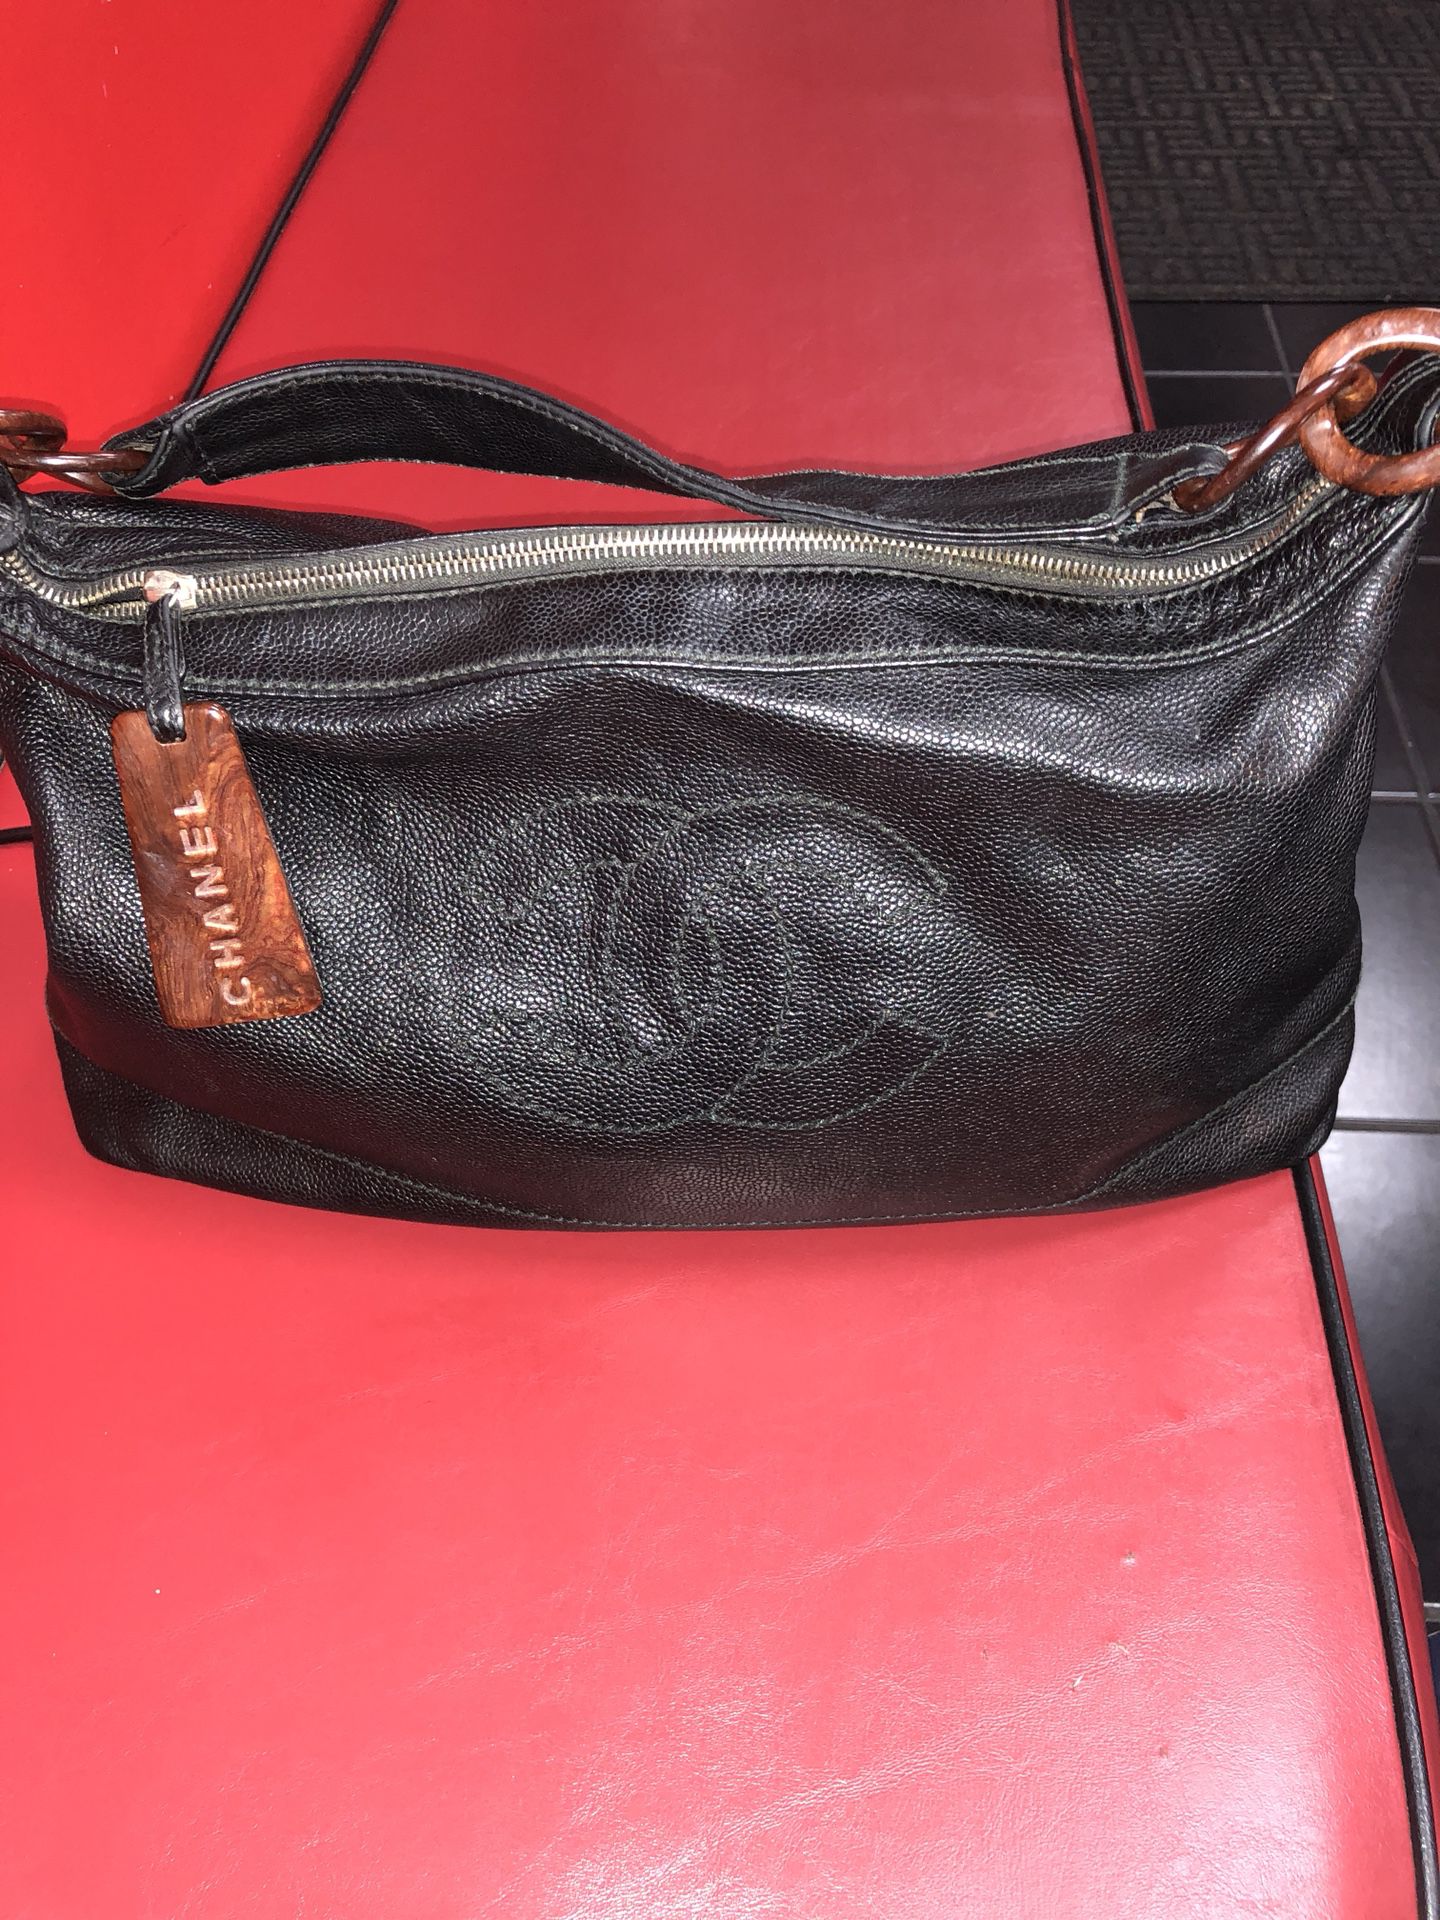 Classic Chanel Bag Authentic original